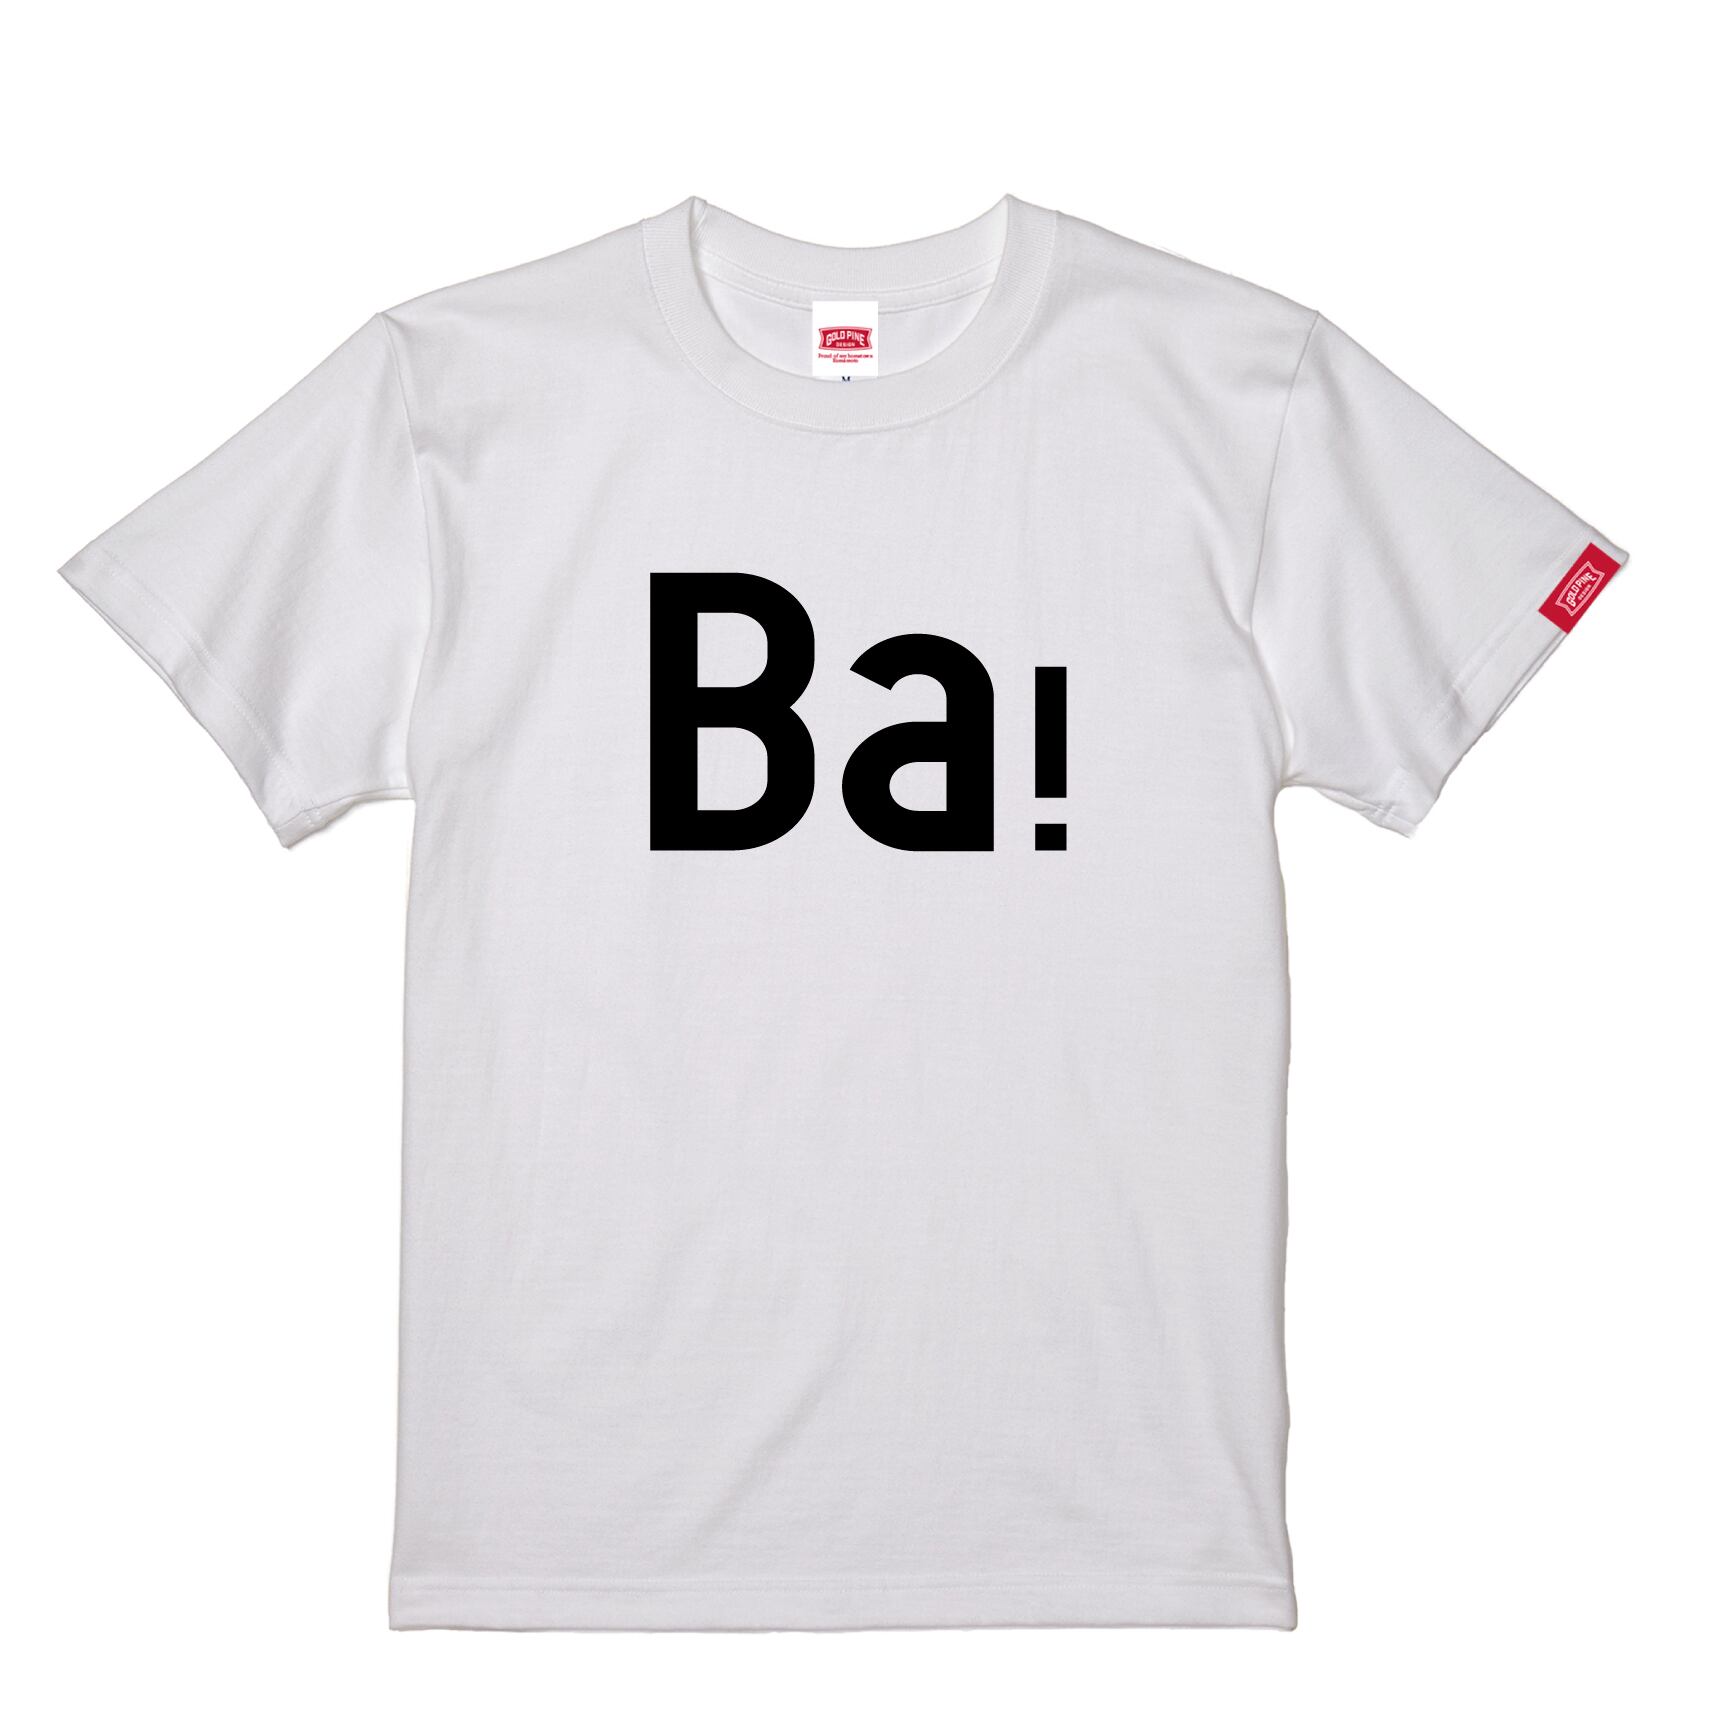 Ba！-Tshirt【Adult】White